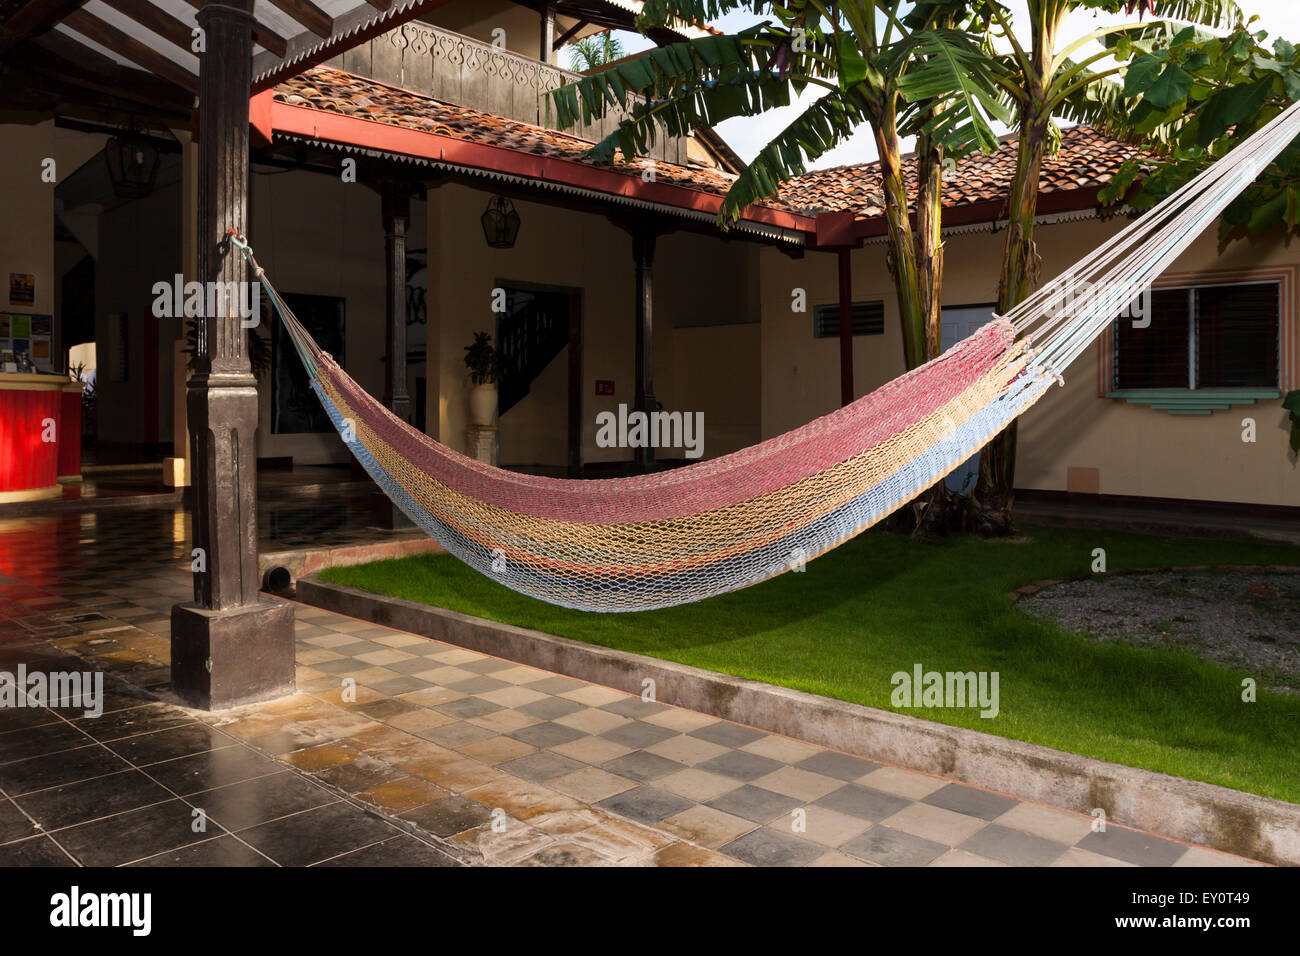 Hängematte in den Innenhof der Faulenzer Hostal in León, Nicaragua  Stockfotografie - Alamy